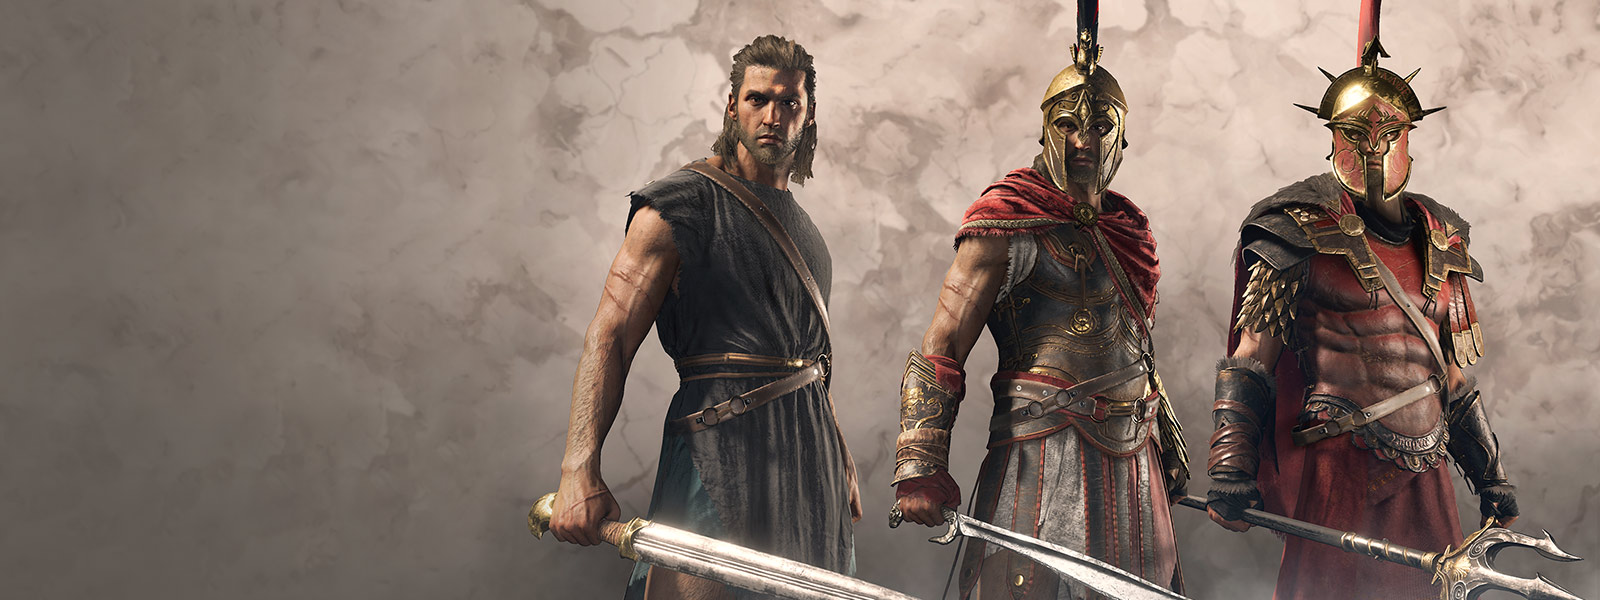 搭配不同的希腊勇士服饰和装备的玩家角色